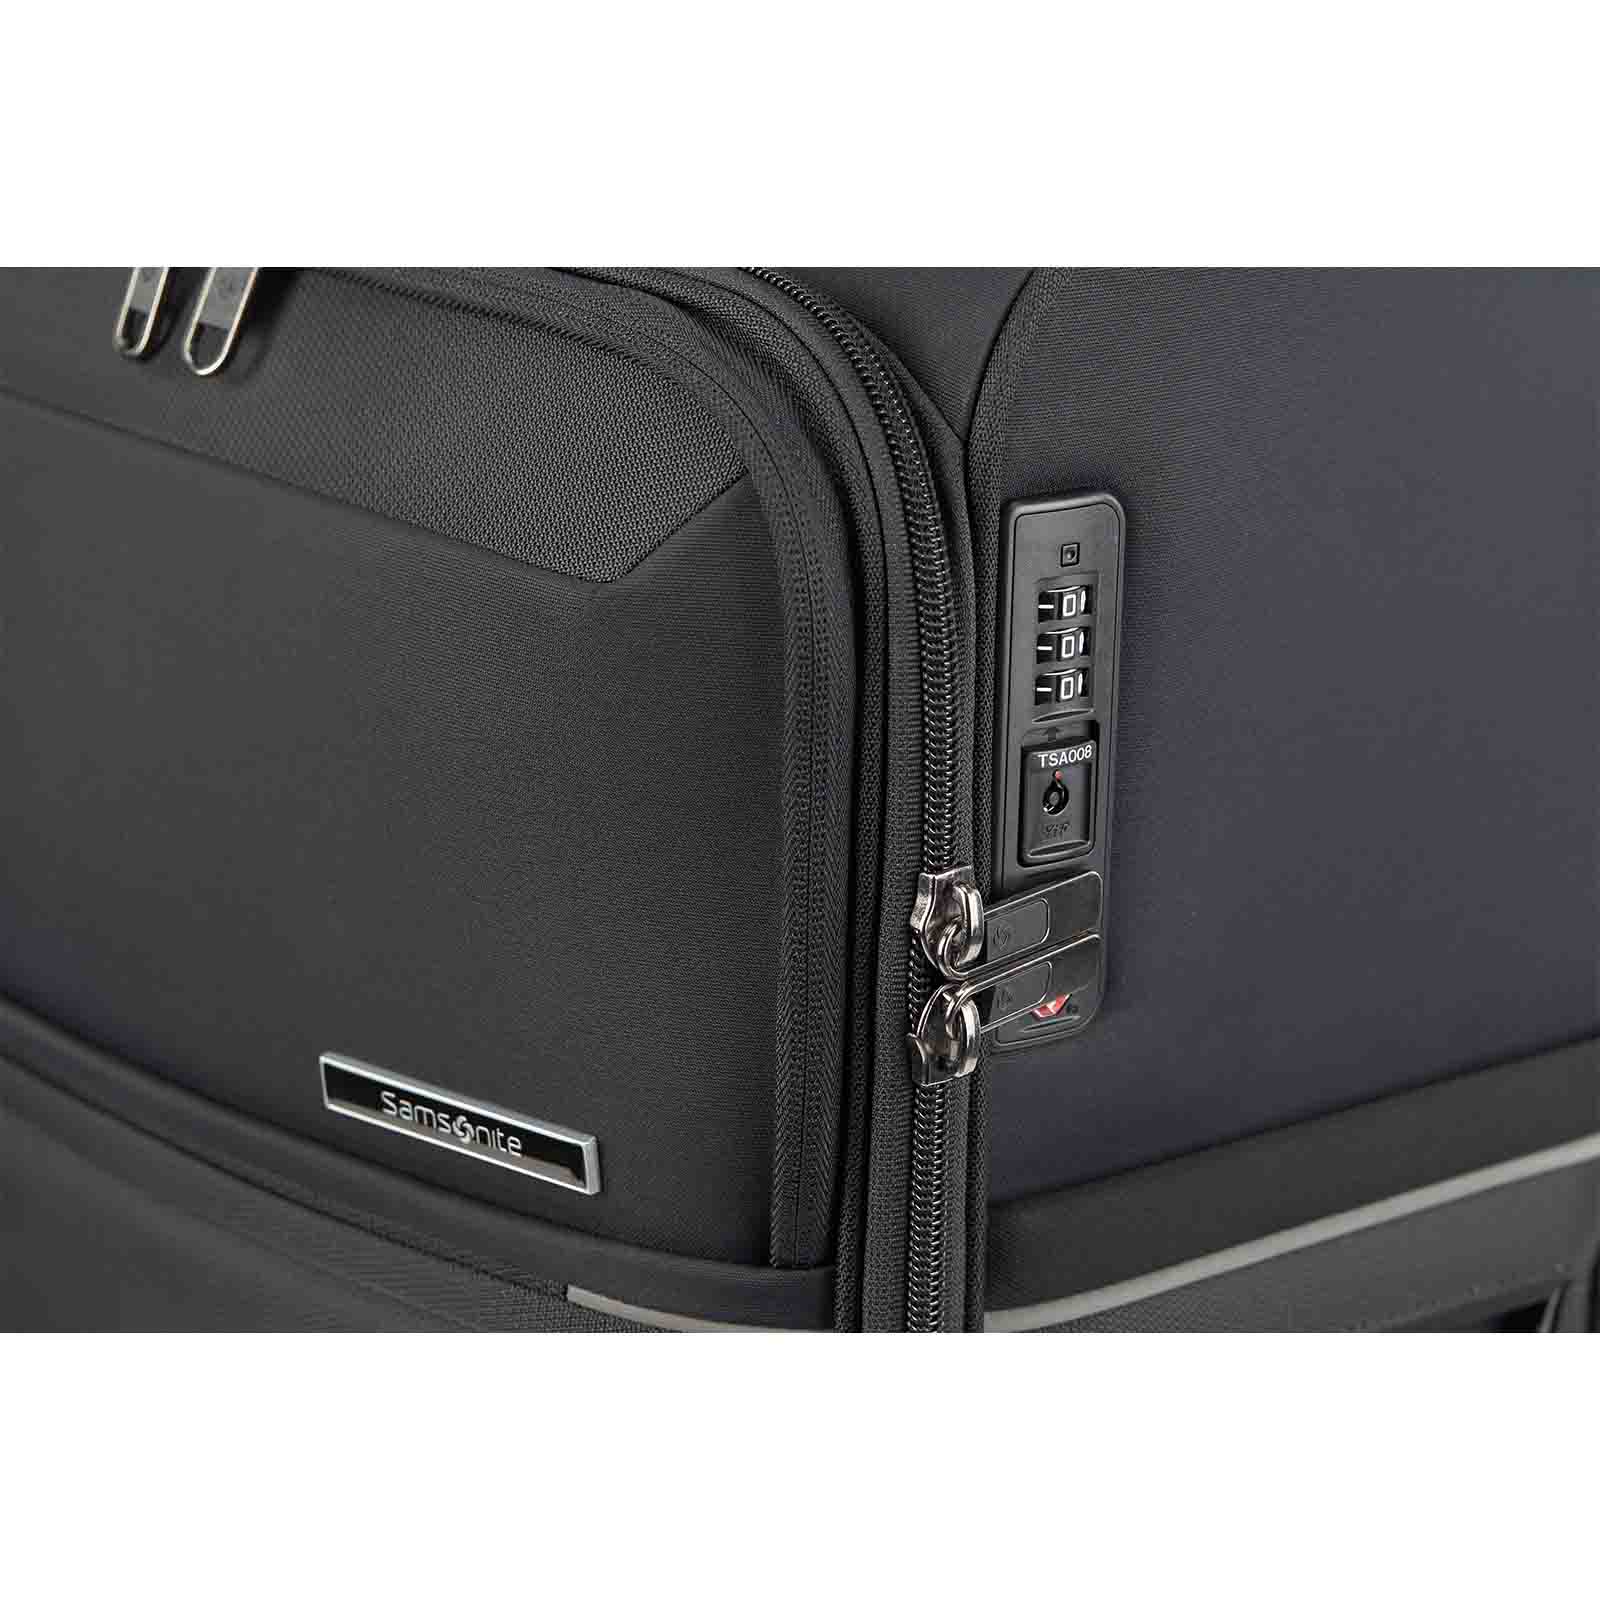 Samsonite-73h-55cm-Suitcase-Black-Lock